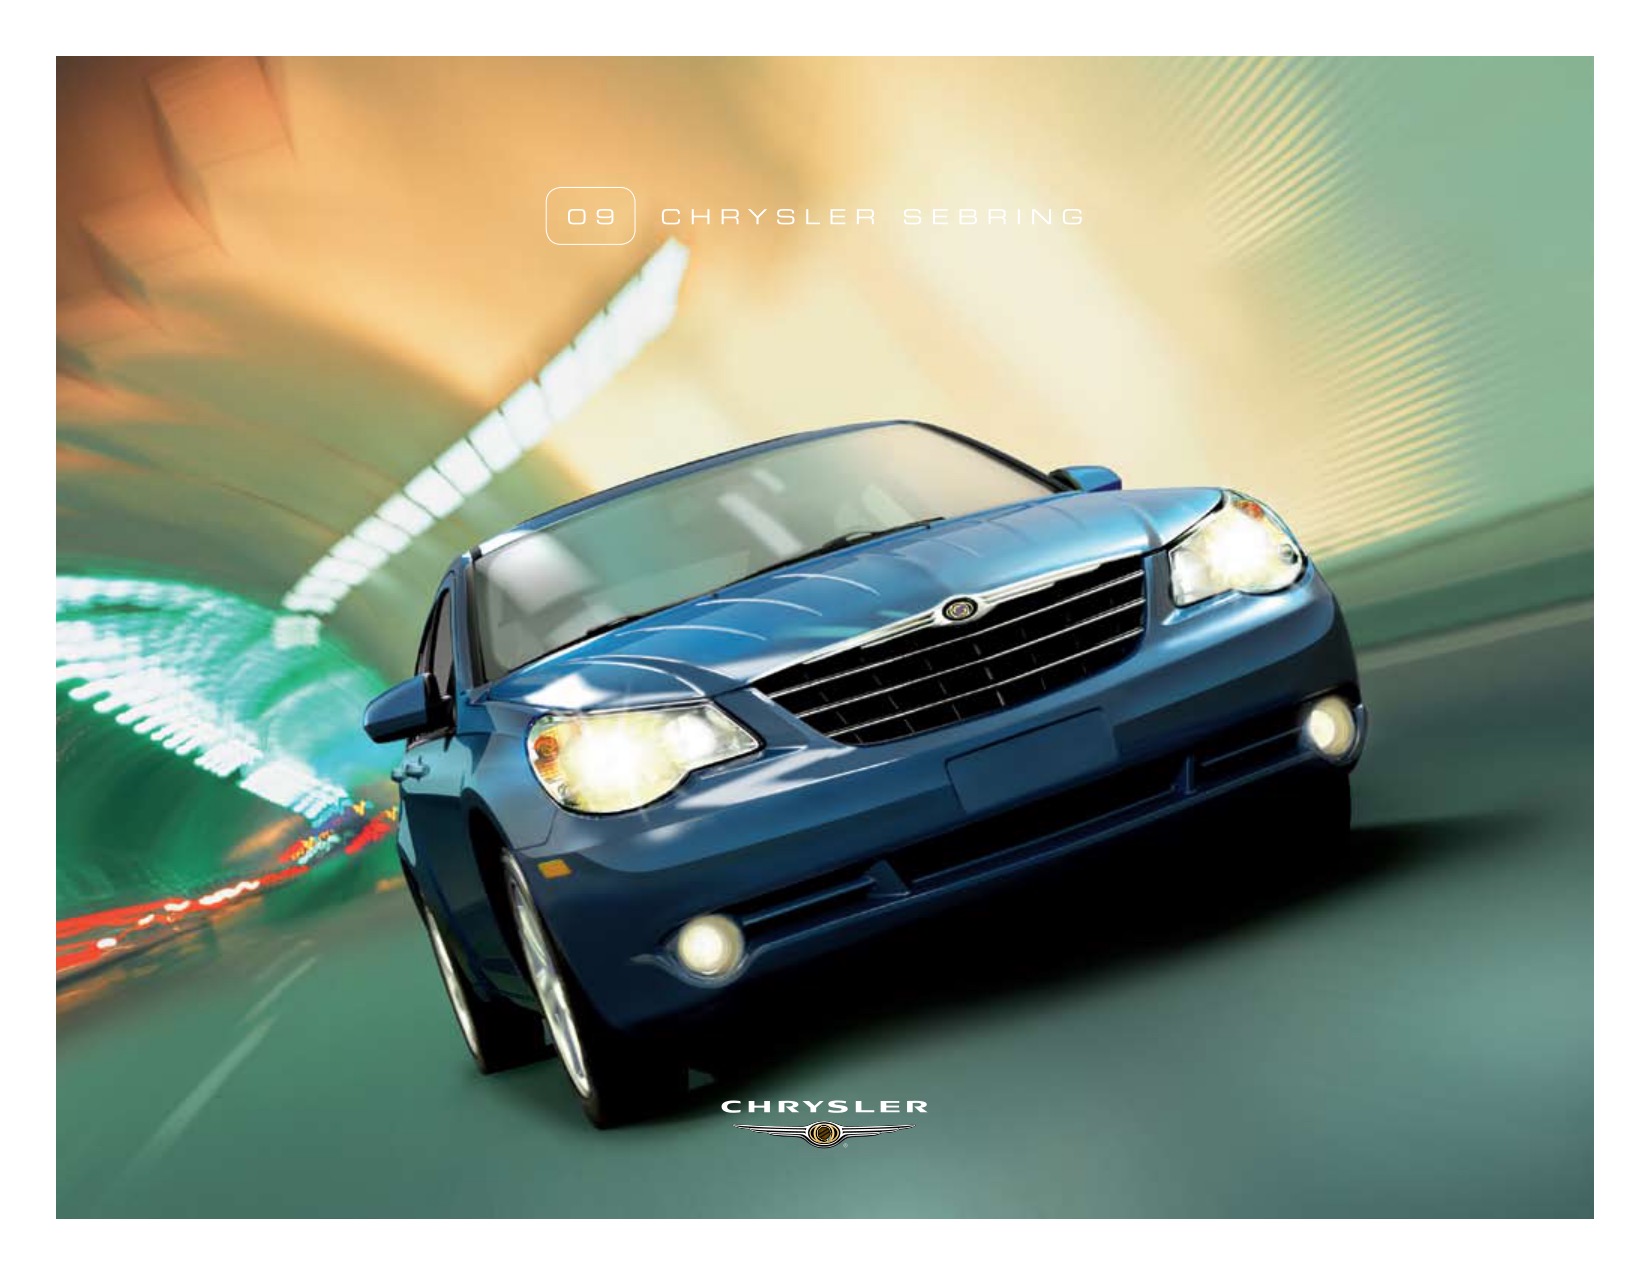 2009 Chrysler Sebring Brochure